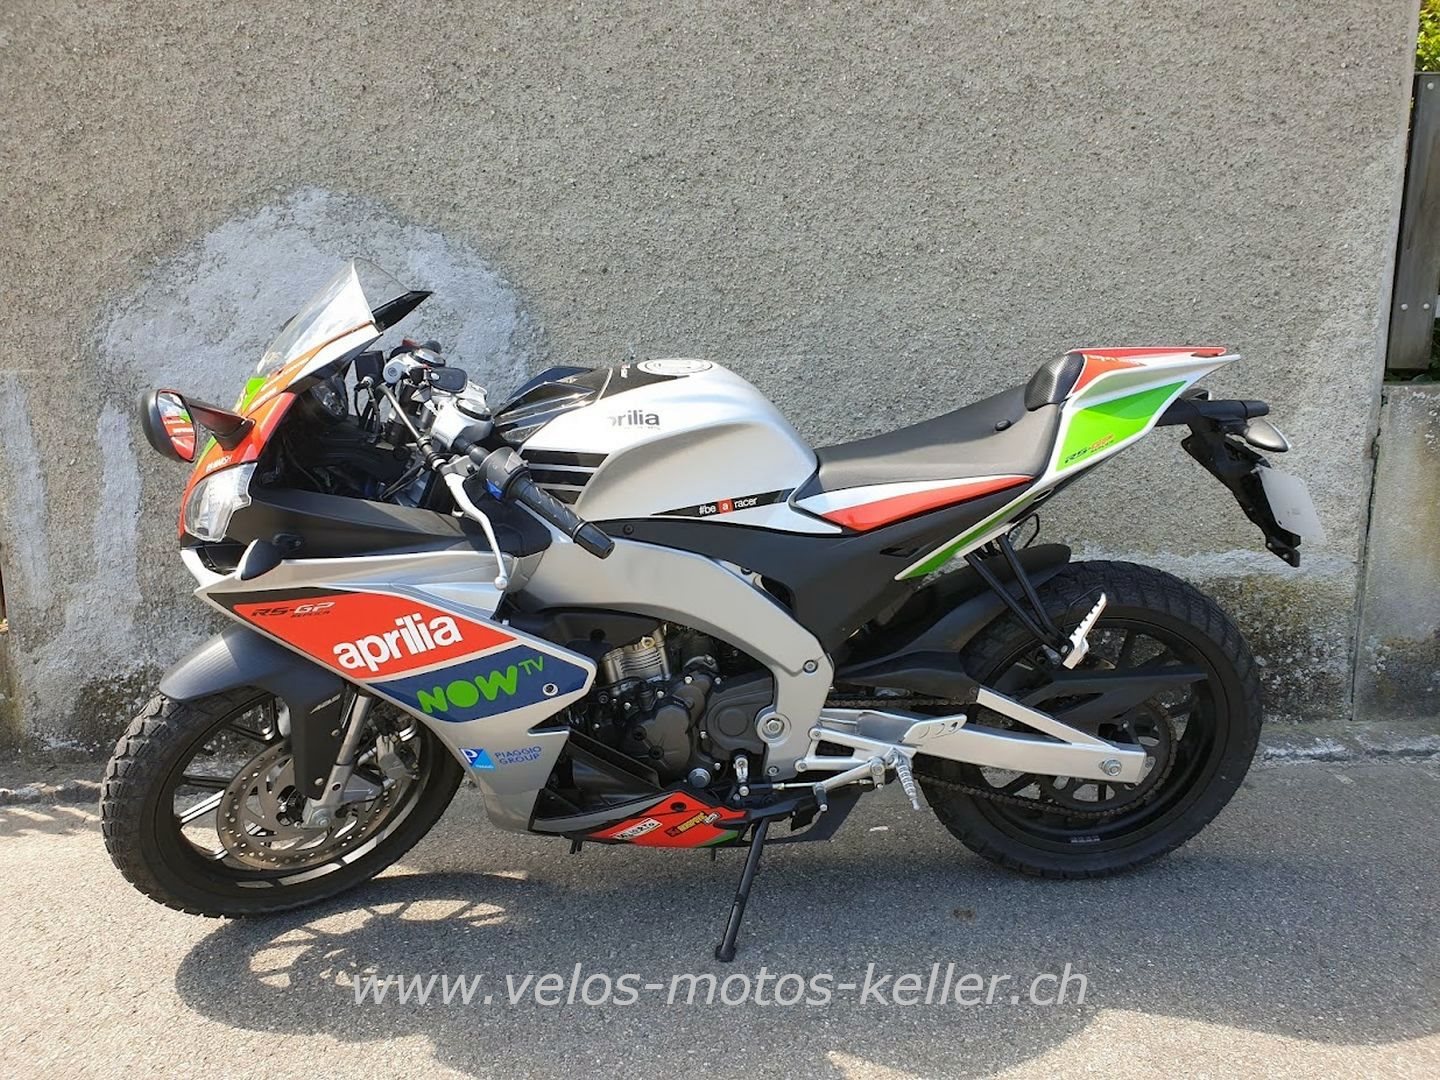 Motorrad Occasionen und neue Motorräder von Velos-Motos Keller kaufen